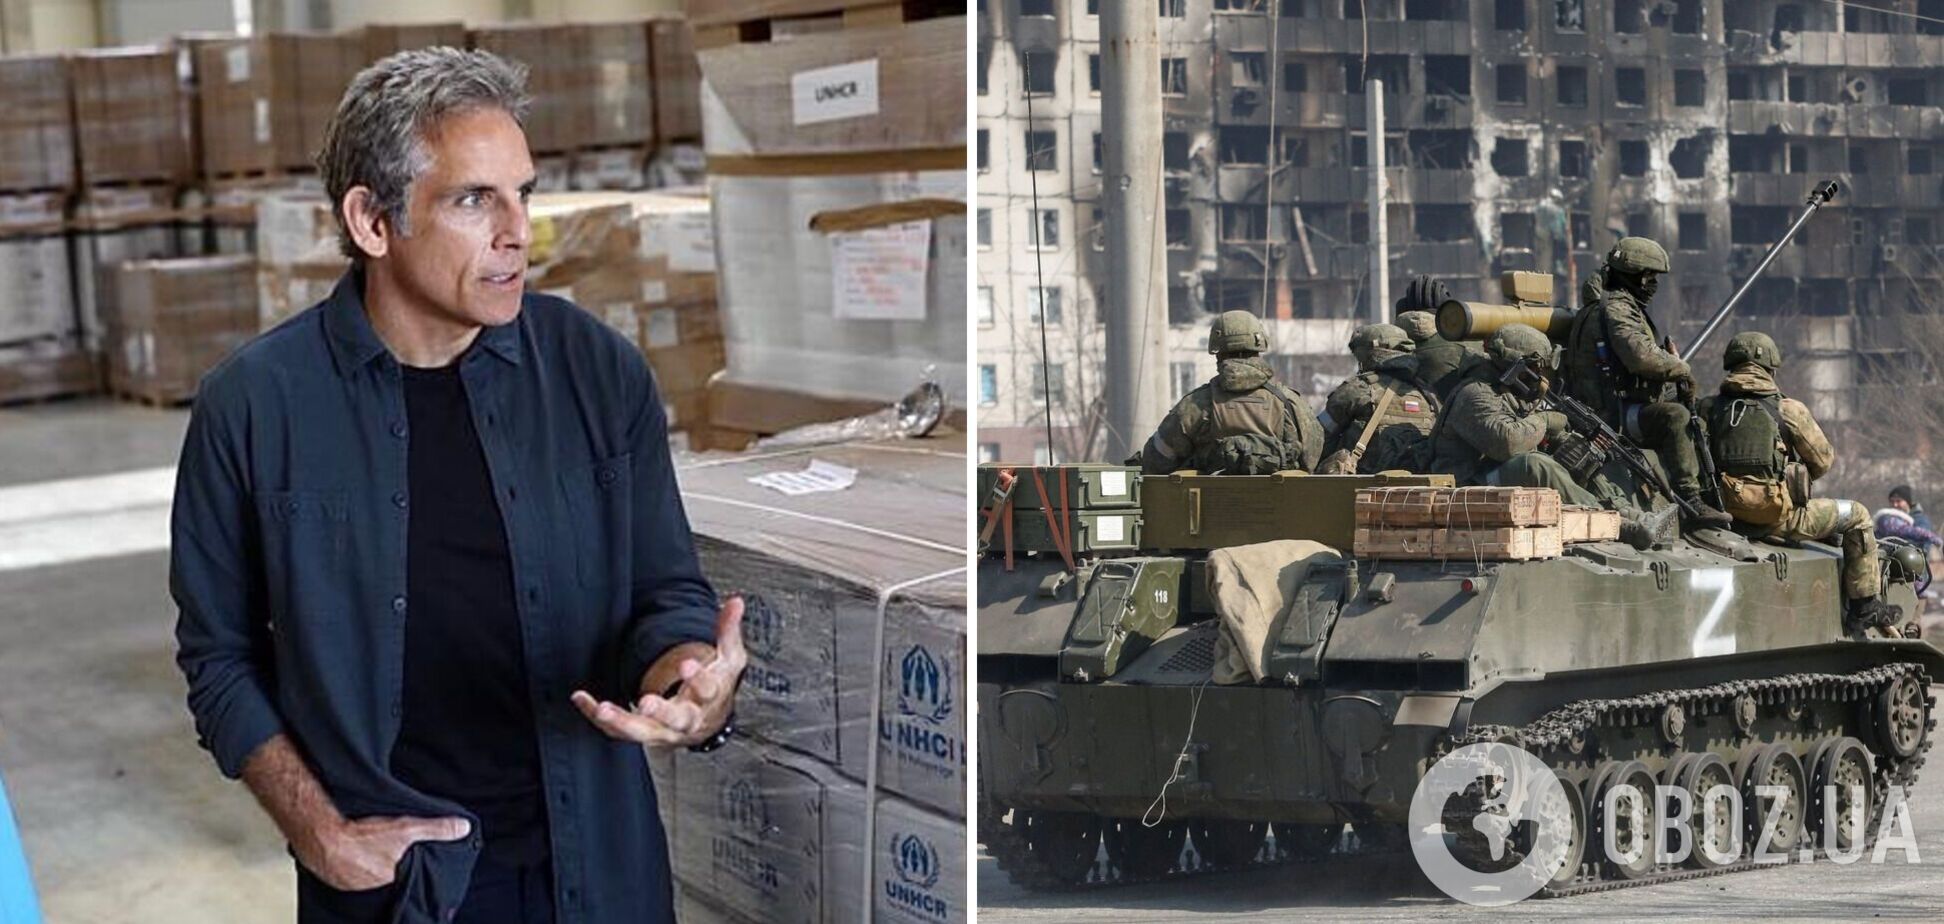 Бена Стіллера шокувало те, що окупанти зробили з Україною: реальна війна – це масштабніше за будь-який фільм